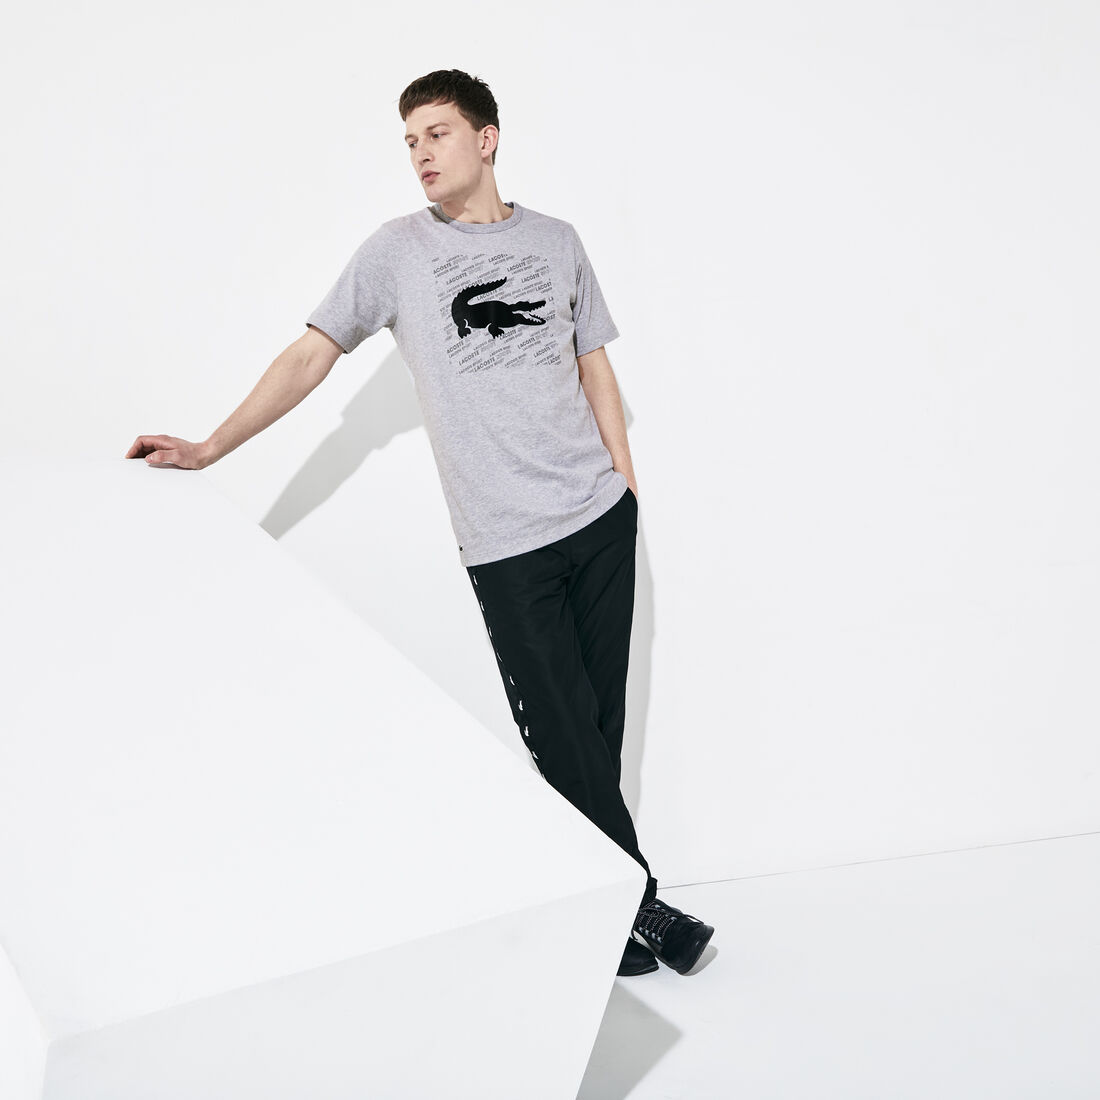 Men's Lacoste SPORT Reflective Crocodile Print Cotton T-shirt